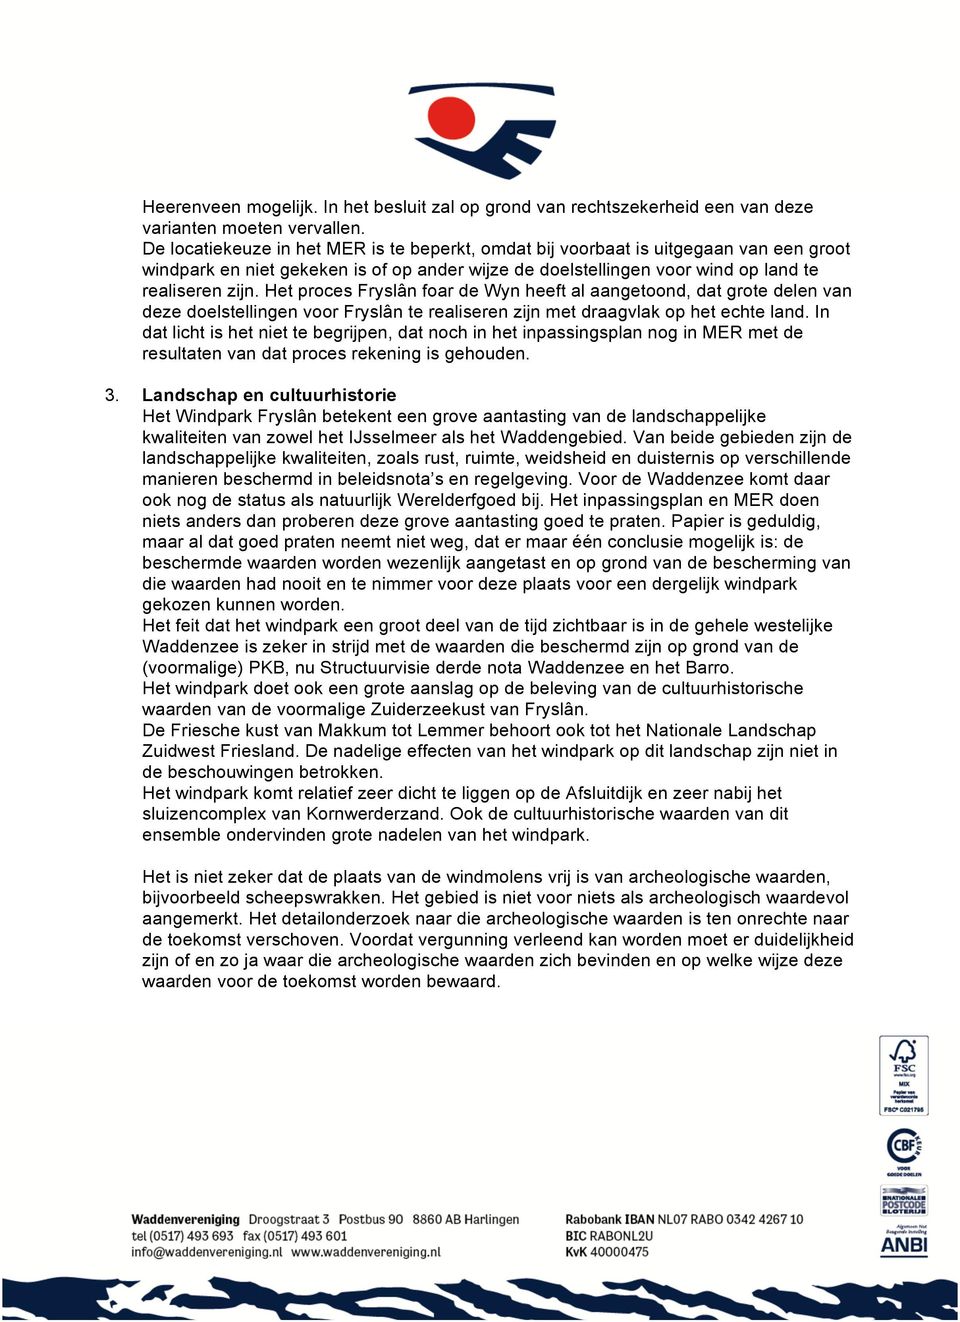 Het proces Fryslân foar de Wyn heeft al aangetoond, dat grote delen van deze doelstellingen voor Fryslân te realiseren zijn met draagvlak op het echte land.